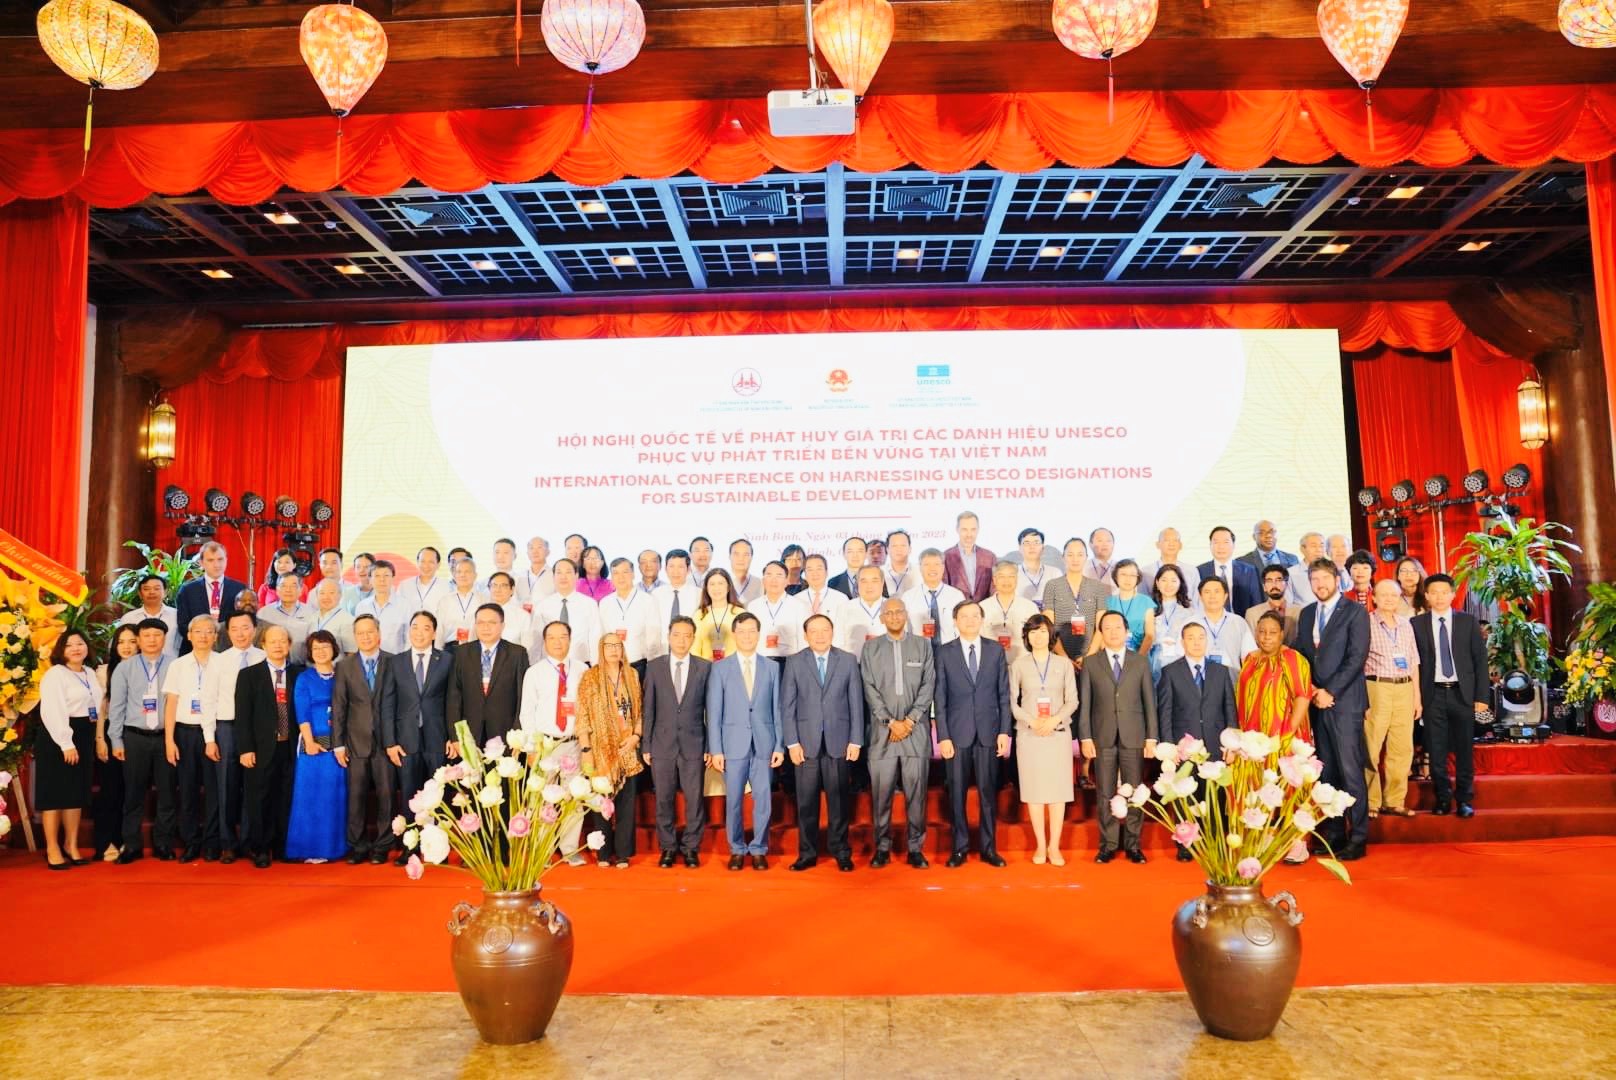 Hội nghị quốc tế về phát huy giá trị các danh hiệu UNESCO phục vụ phát triển bền vững tại Việt Nam